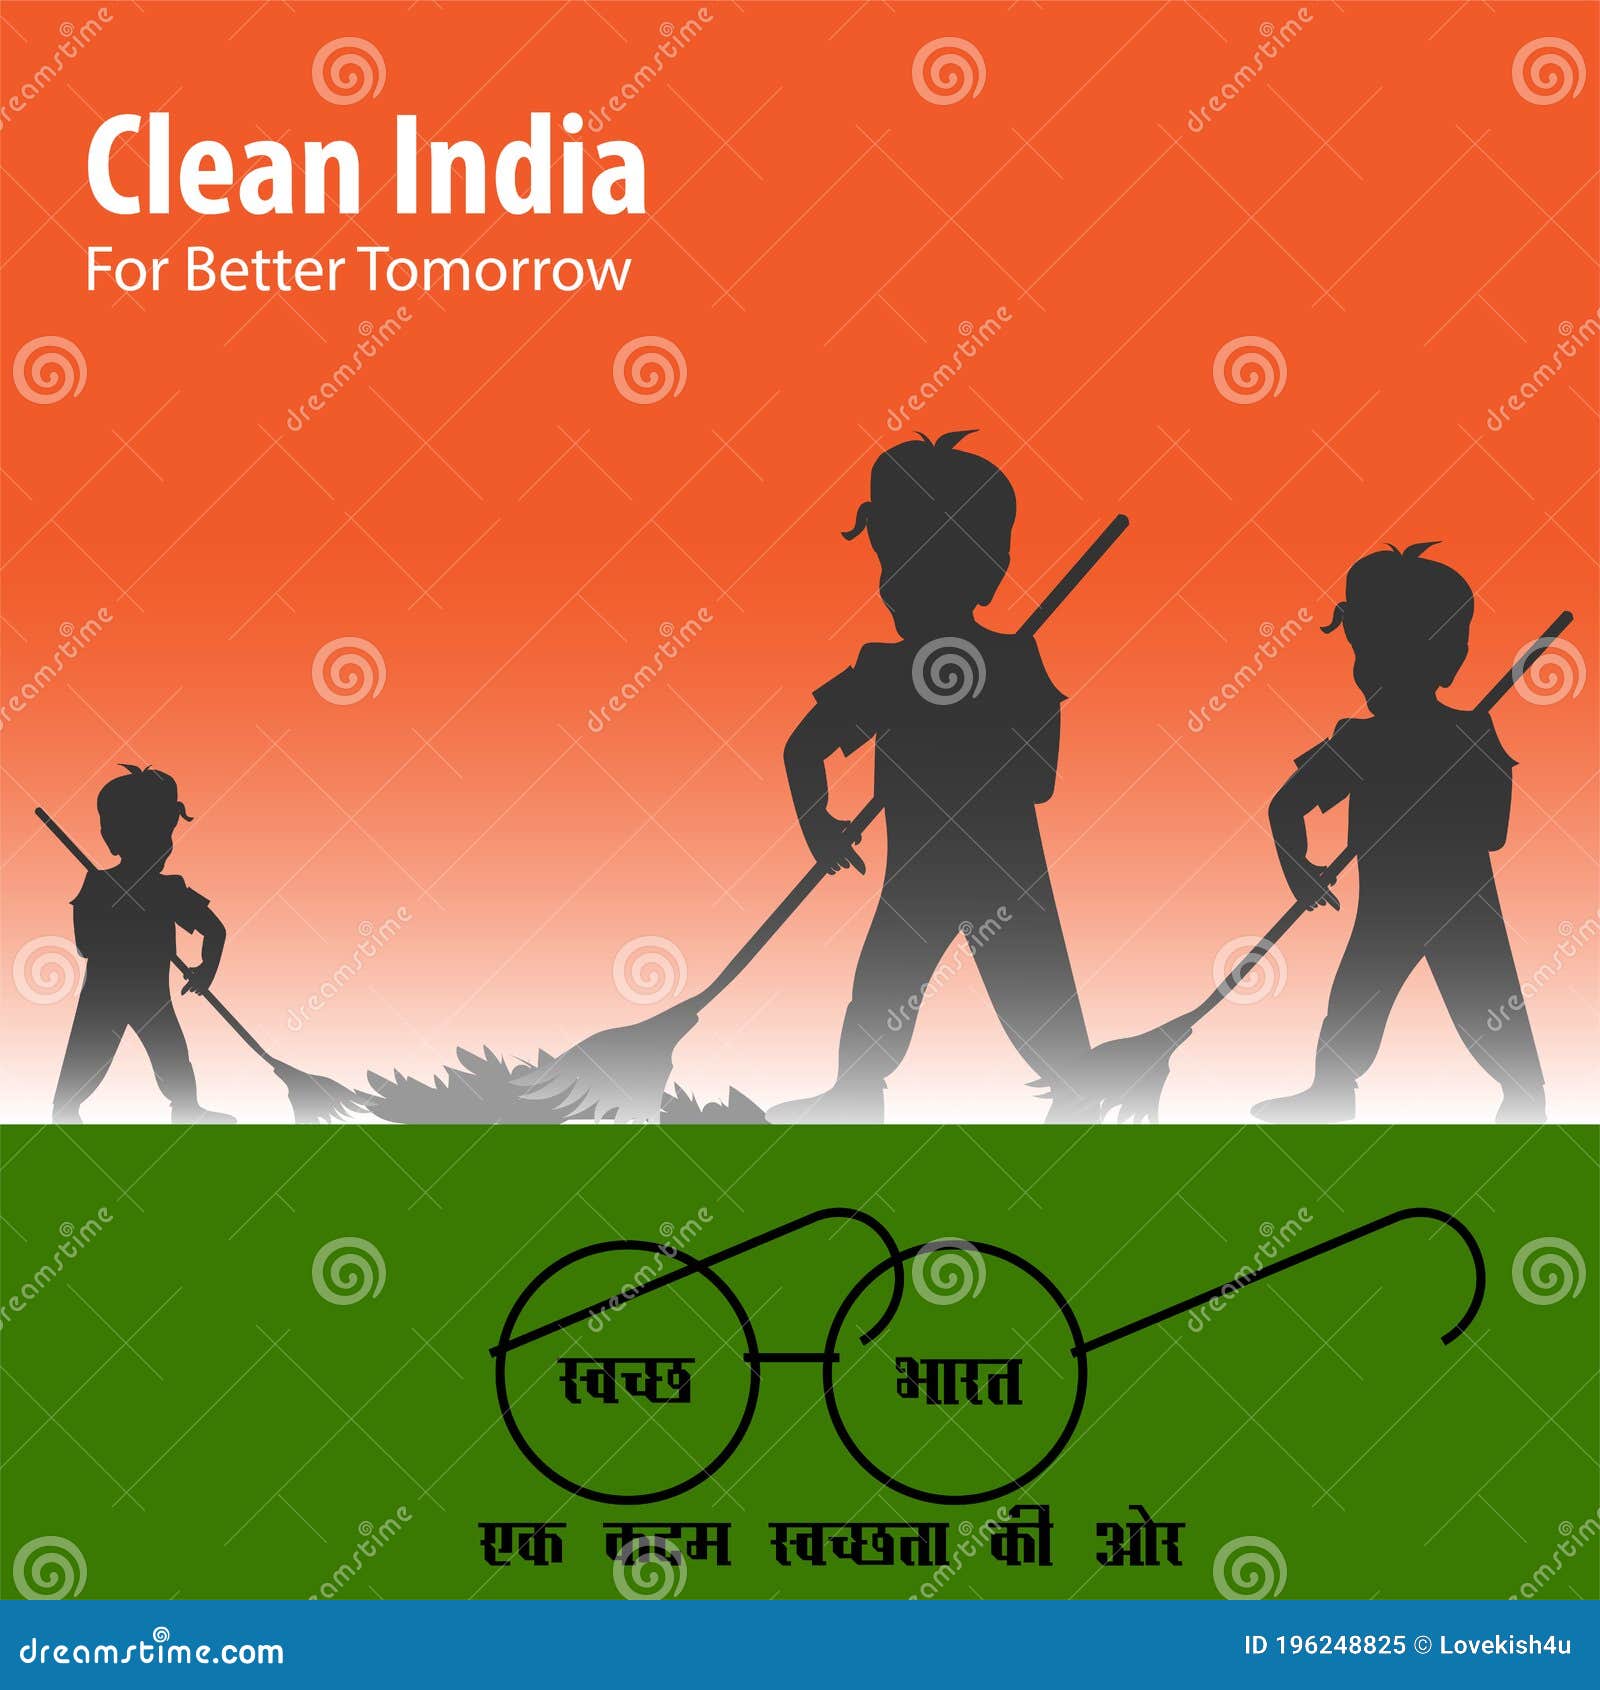 Clean India campaign – Creofire